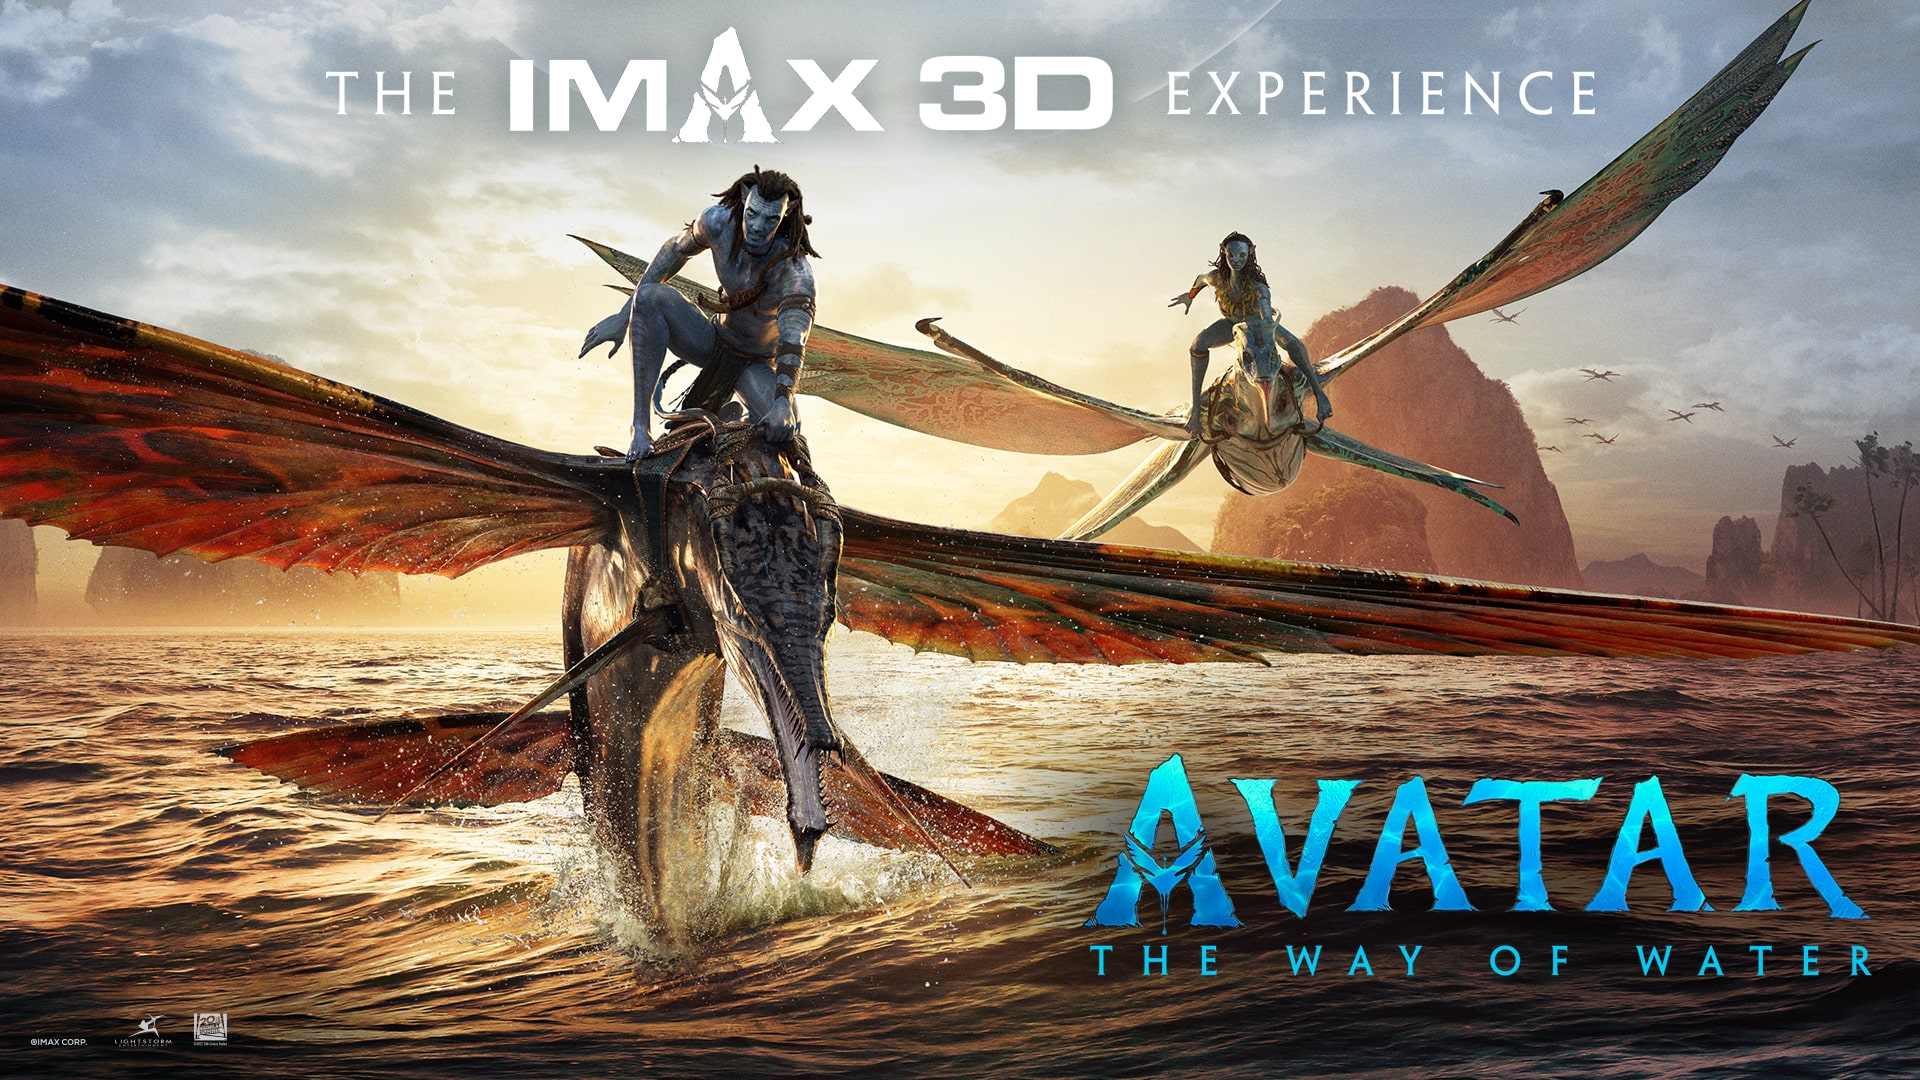 Avatar 2 định dạng đặc biệt:
Để tăng cường trải nghiệm cho khán giả, Avatar 2 sẽ được phát hành với định dạng đặc biệt IMAX 3D và Dolby Atmos. Với độ phân giải ấn tượng của IMAX cùng âm thanh tiên tiến của Dolby Atmos, khán giả sẽ được hoàn toàn đắm chìm vào thế giới tuyệt vời của Avatar